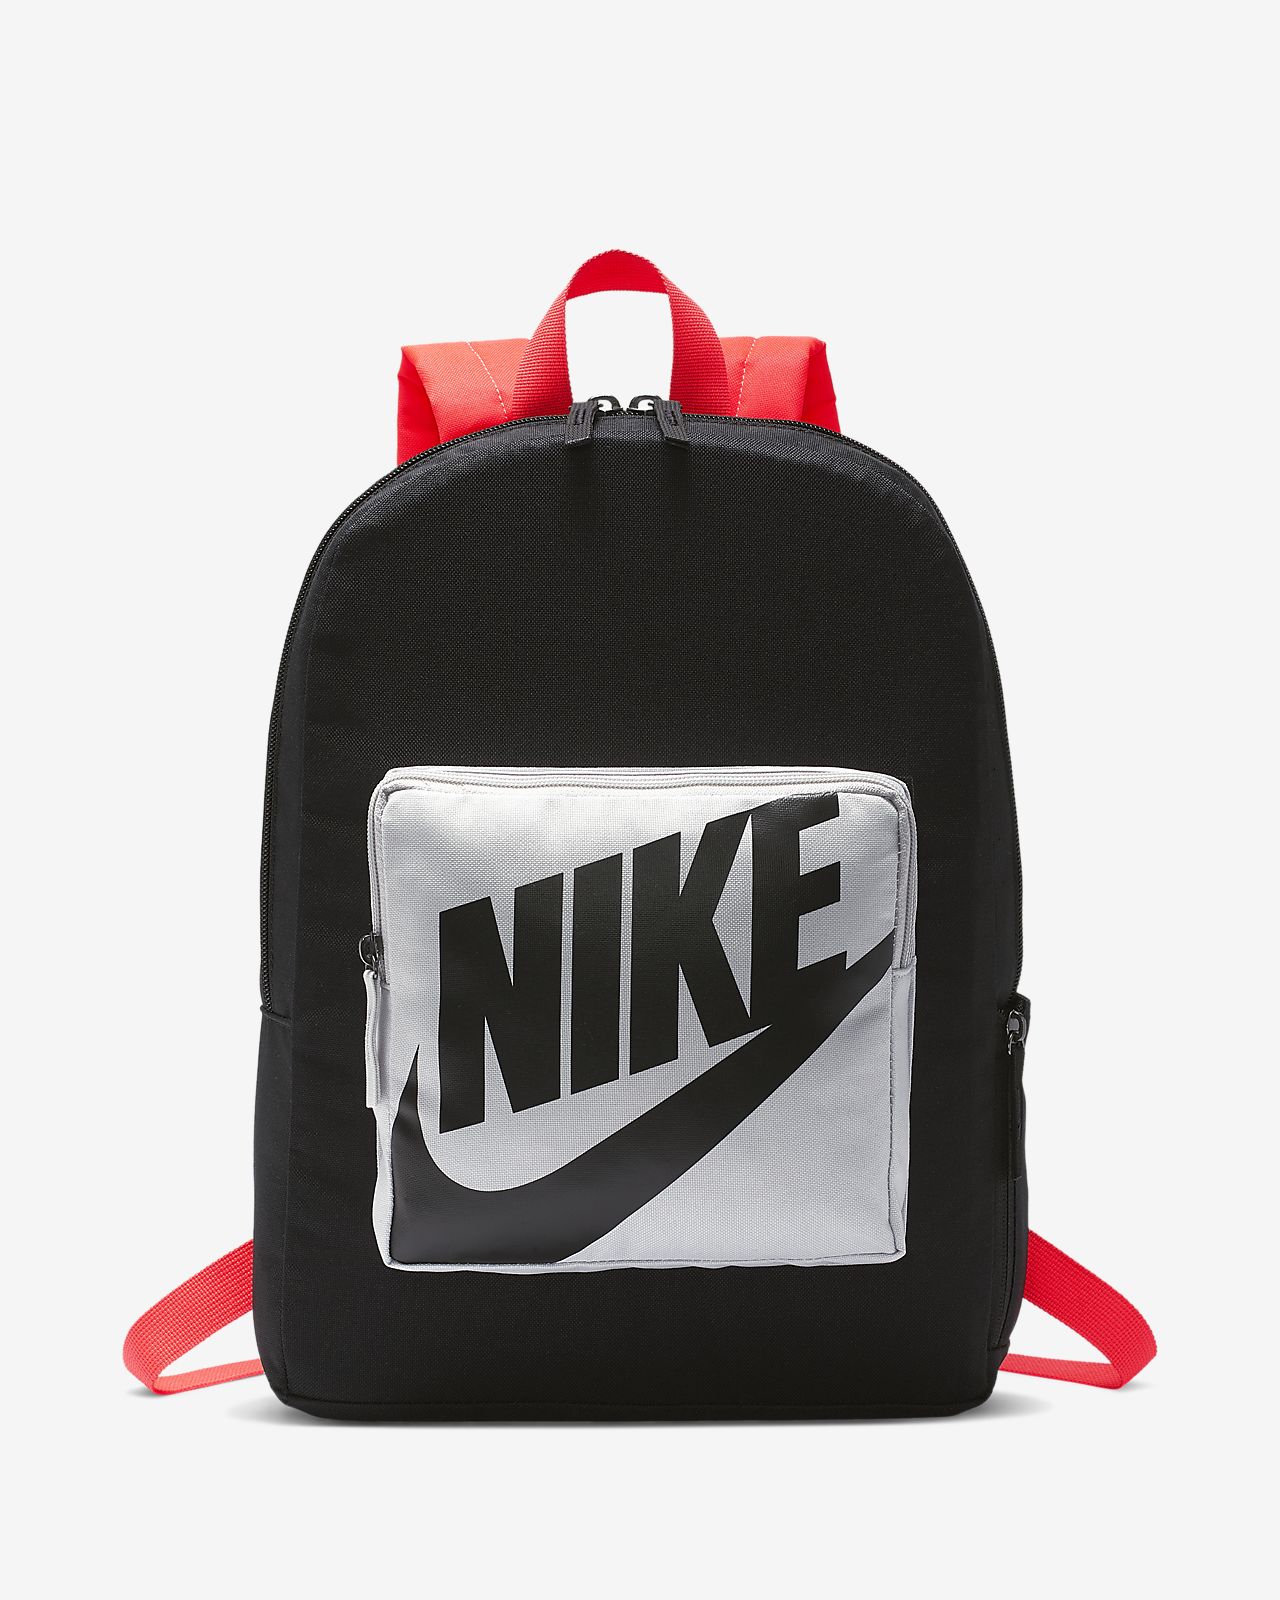 nike classic backpack Cheaper Than 